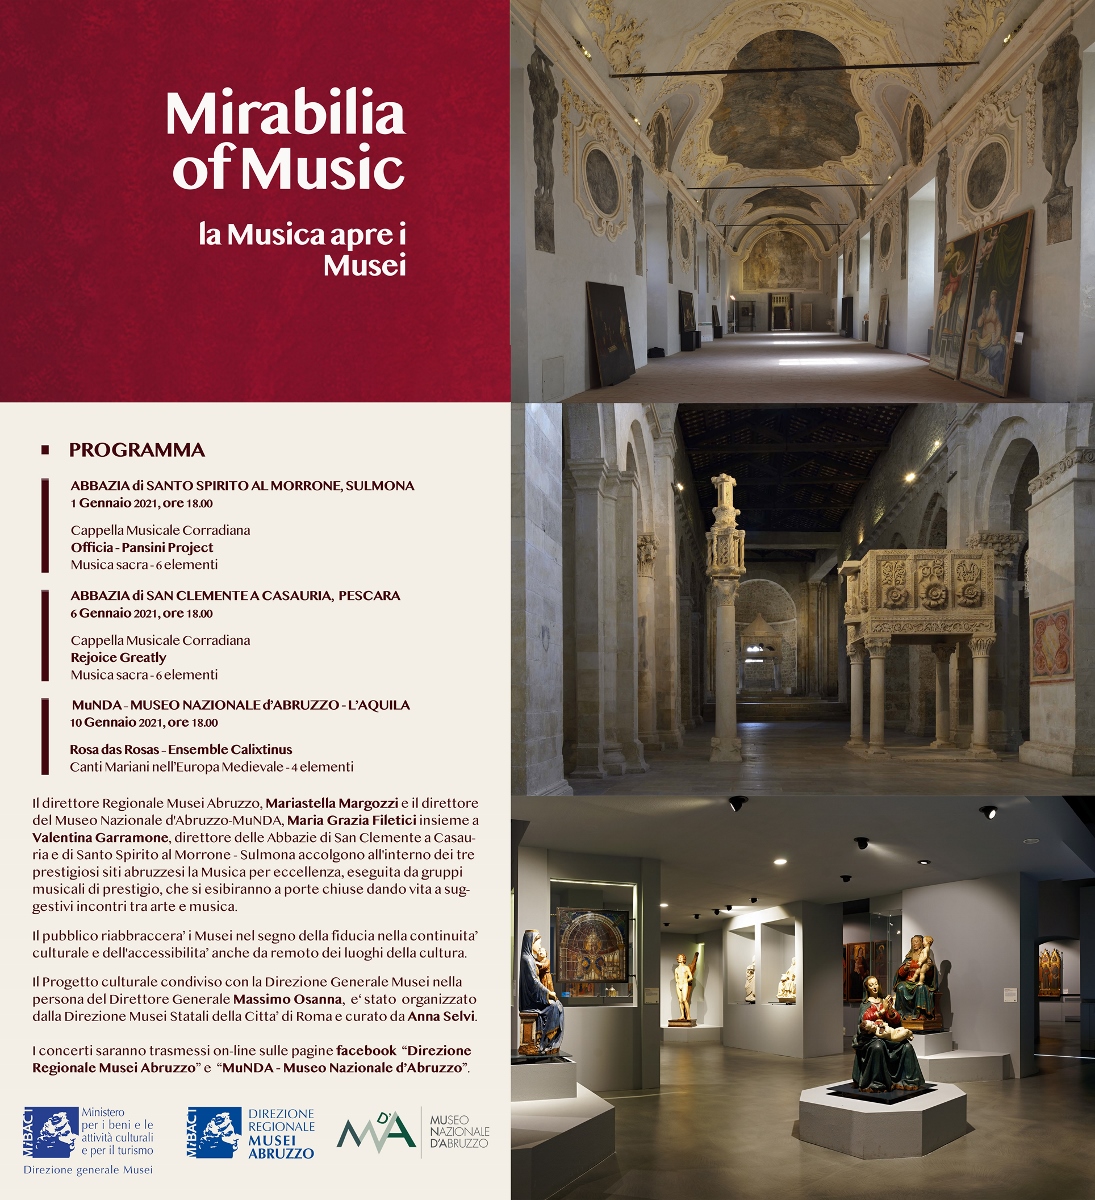 Mirabilia of Musica. La Musica apre i Musei